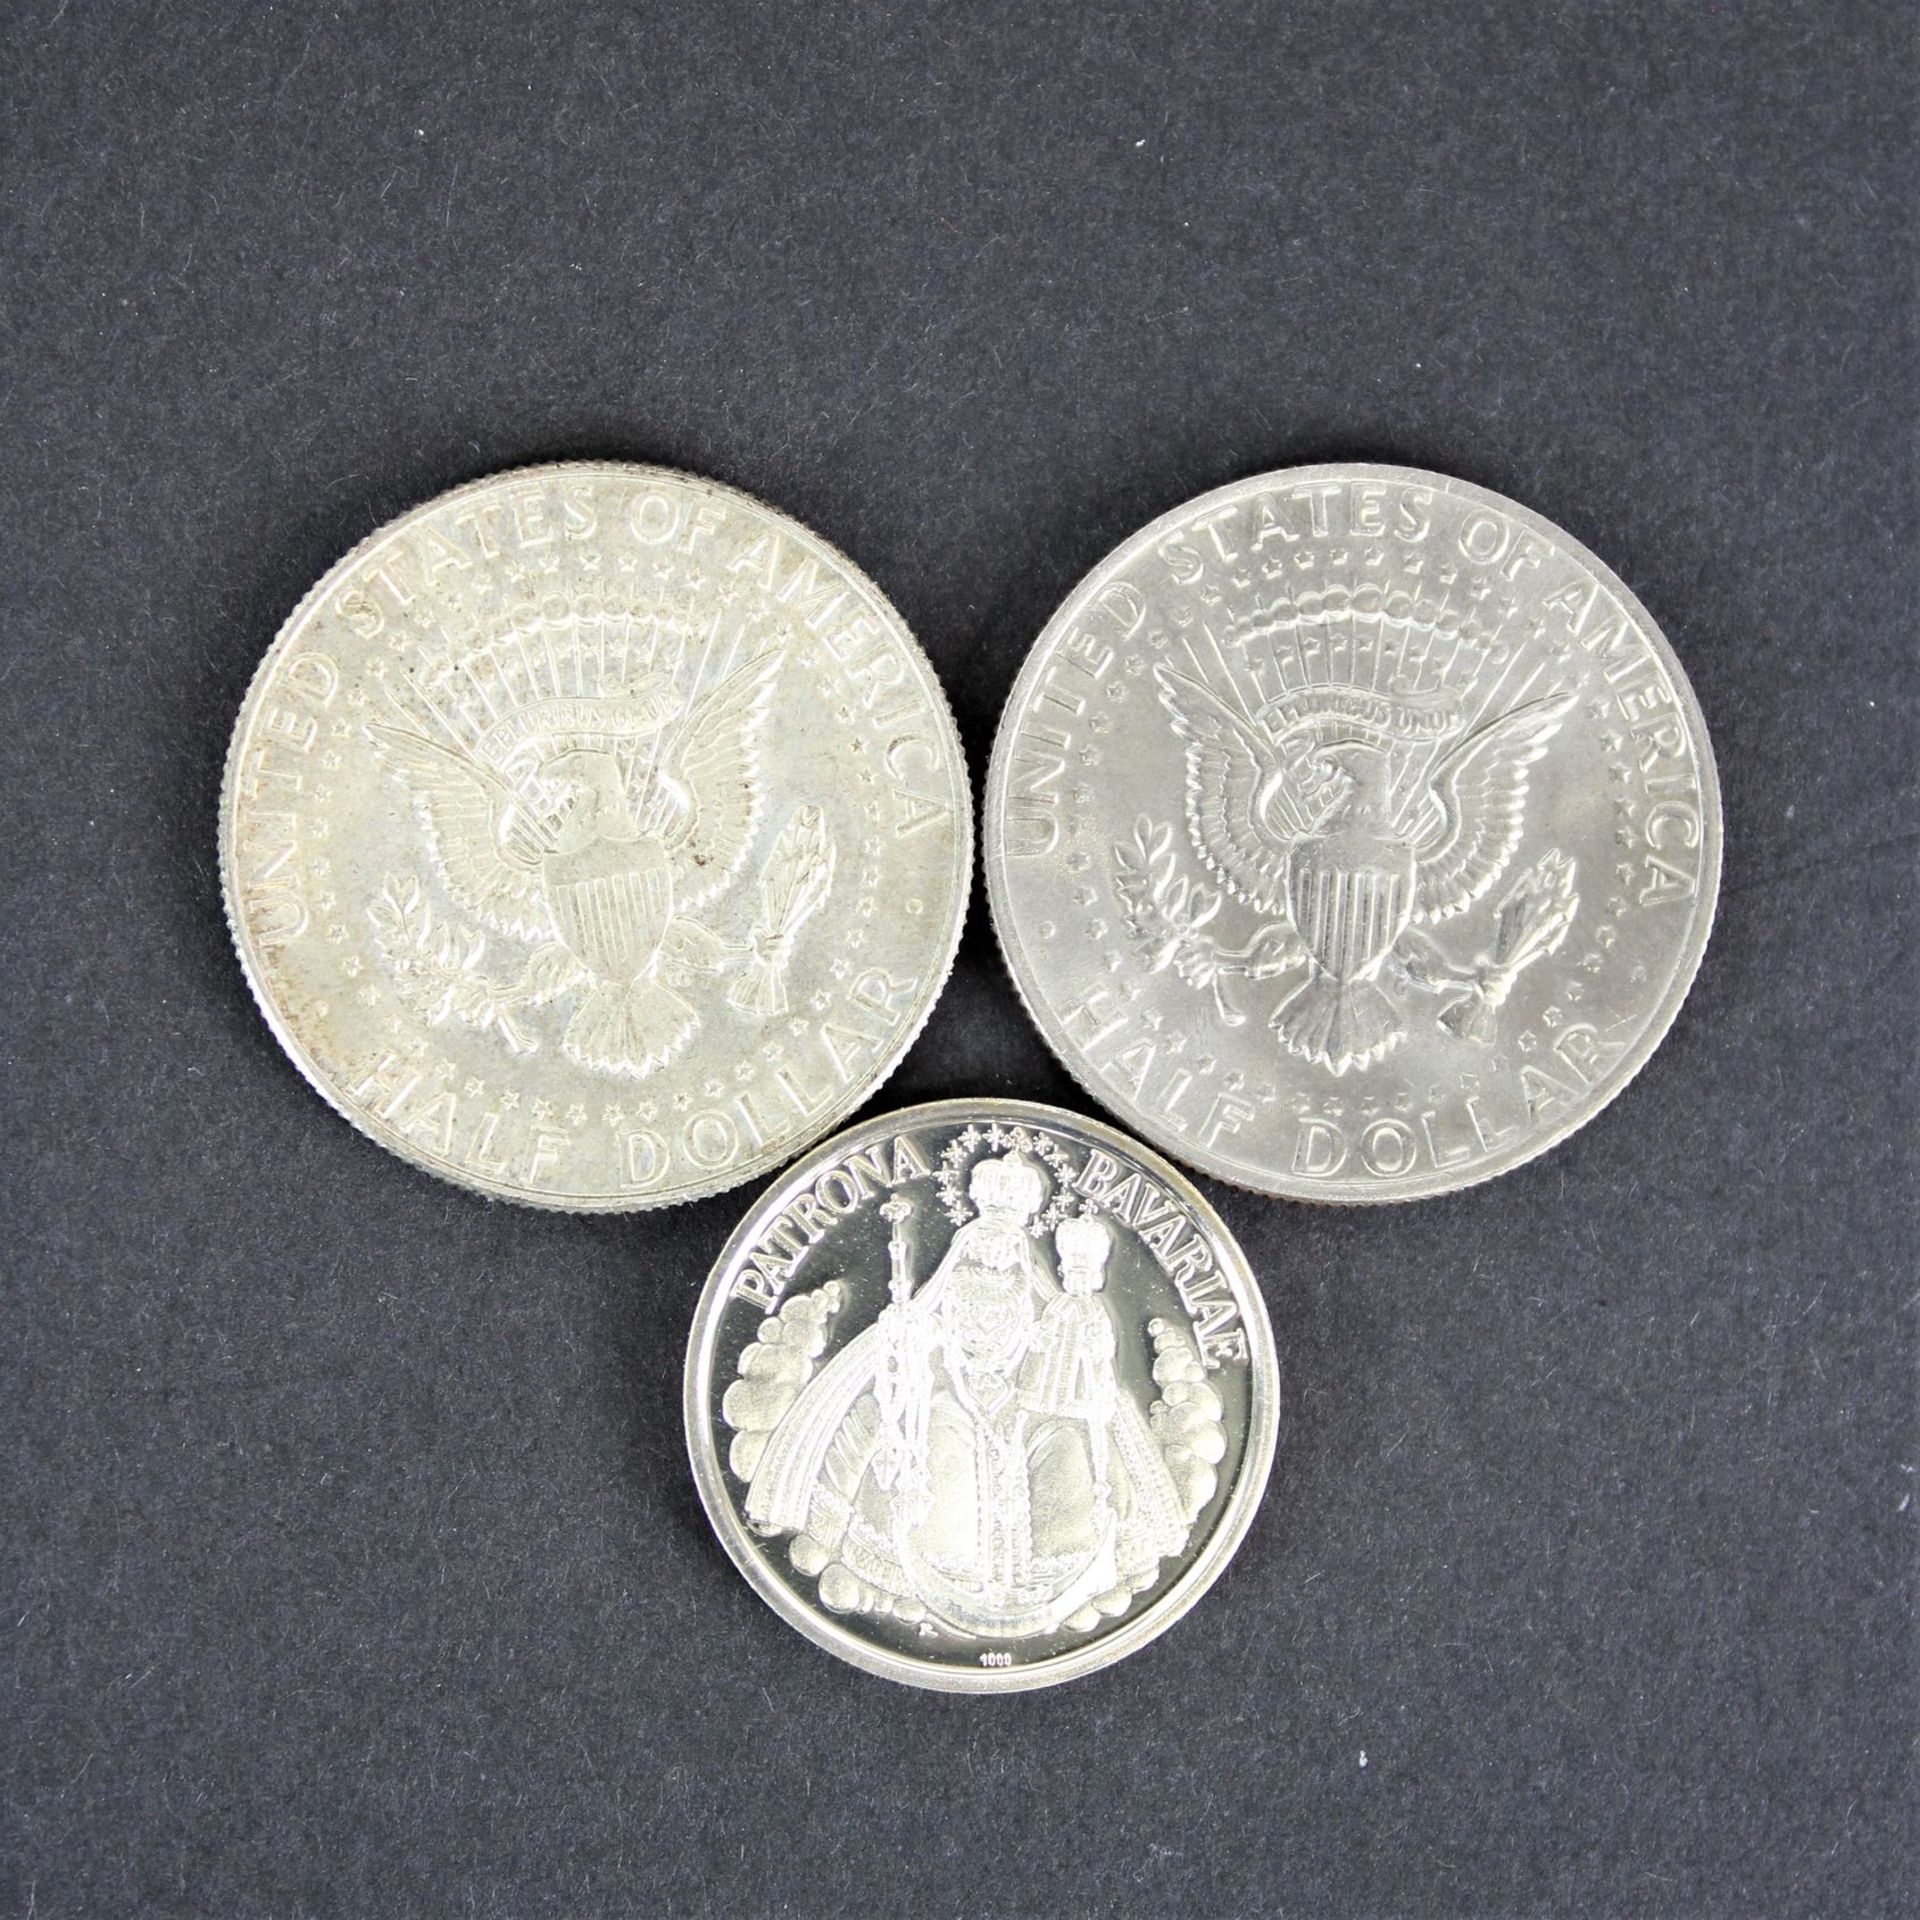 3 Silbermünzen " DIe Geschichte des bayerischen wappens " plus 2 half coin dollars - Image 2 of 2